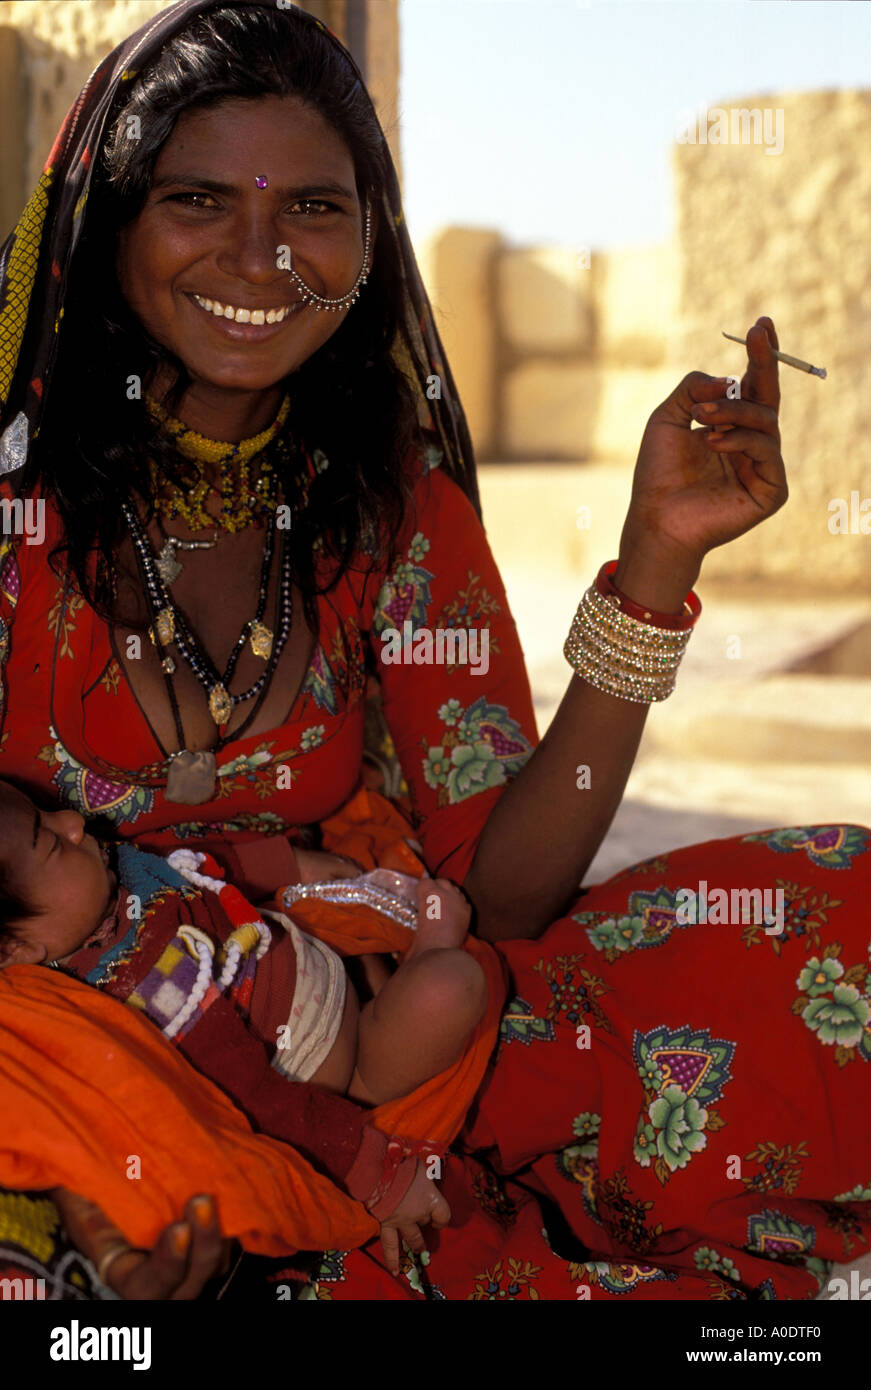 Une mère nomades tsiganes Bopa et tenant son bébé les cultures indigènes et tribus autochtones du Rajasthan Jaisalmer Inde Banque D'Images